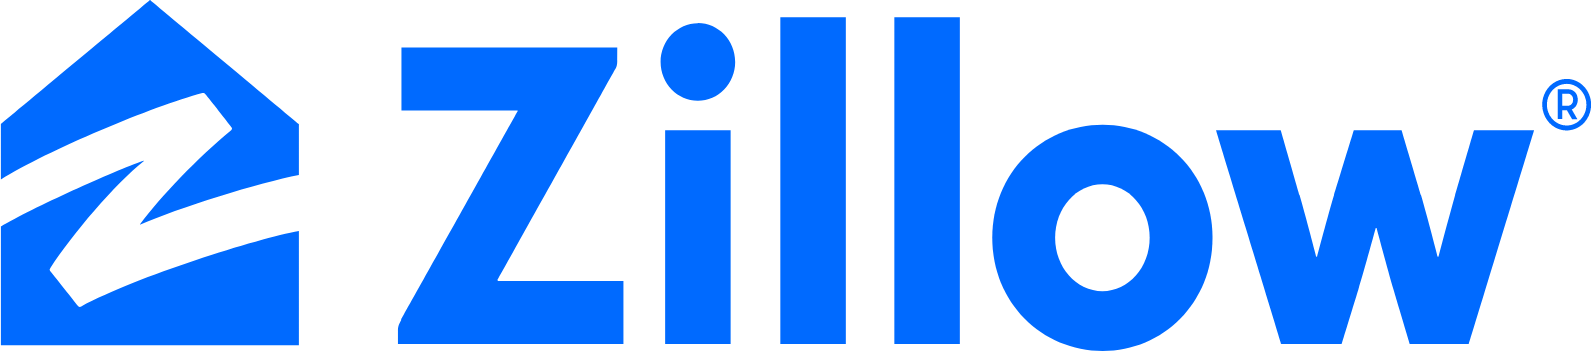 Zillow logo large (transparent PNG)